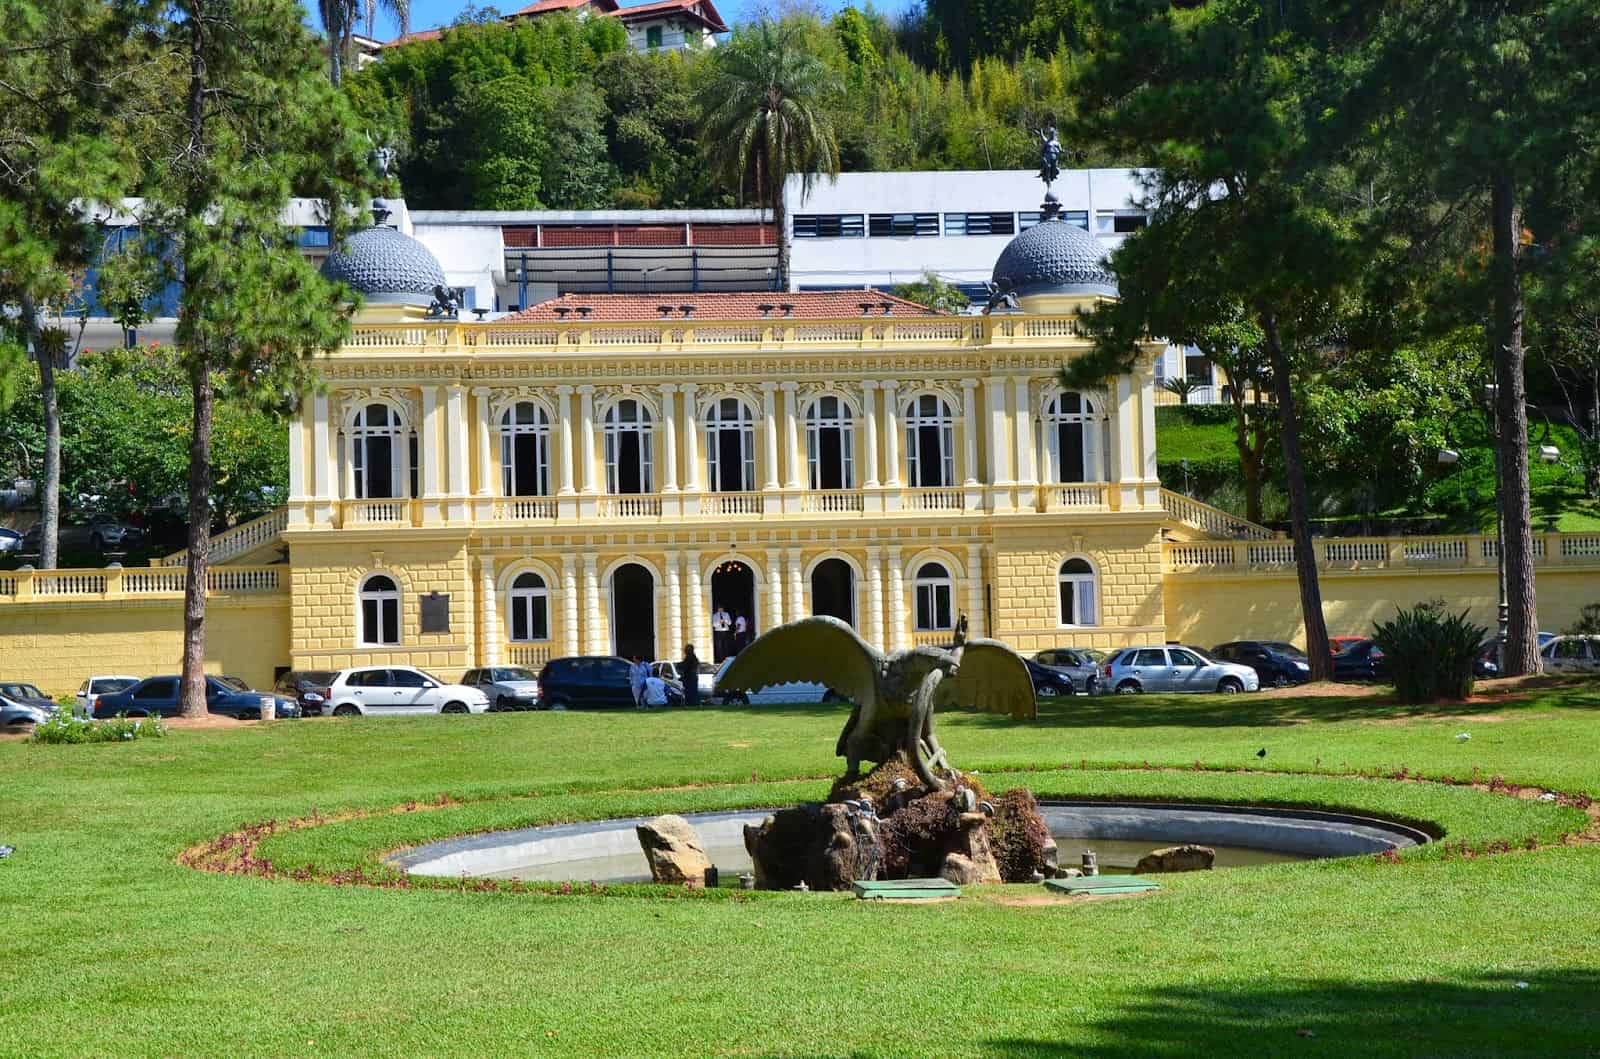 Palácio Amarelo in Petrópolis, Brazil